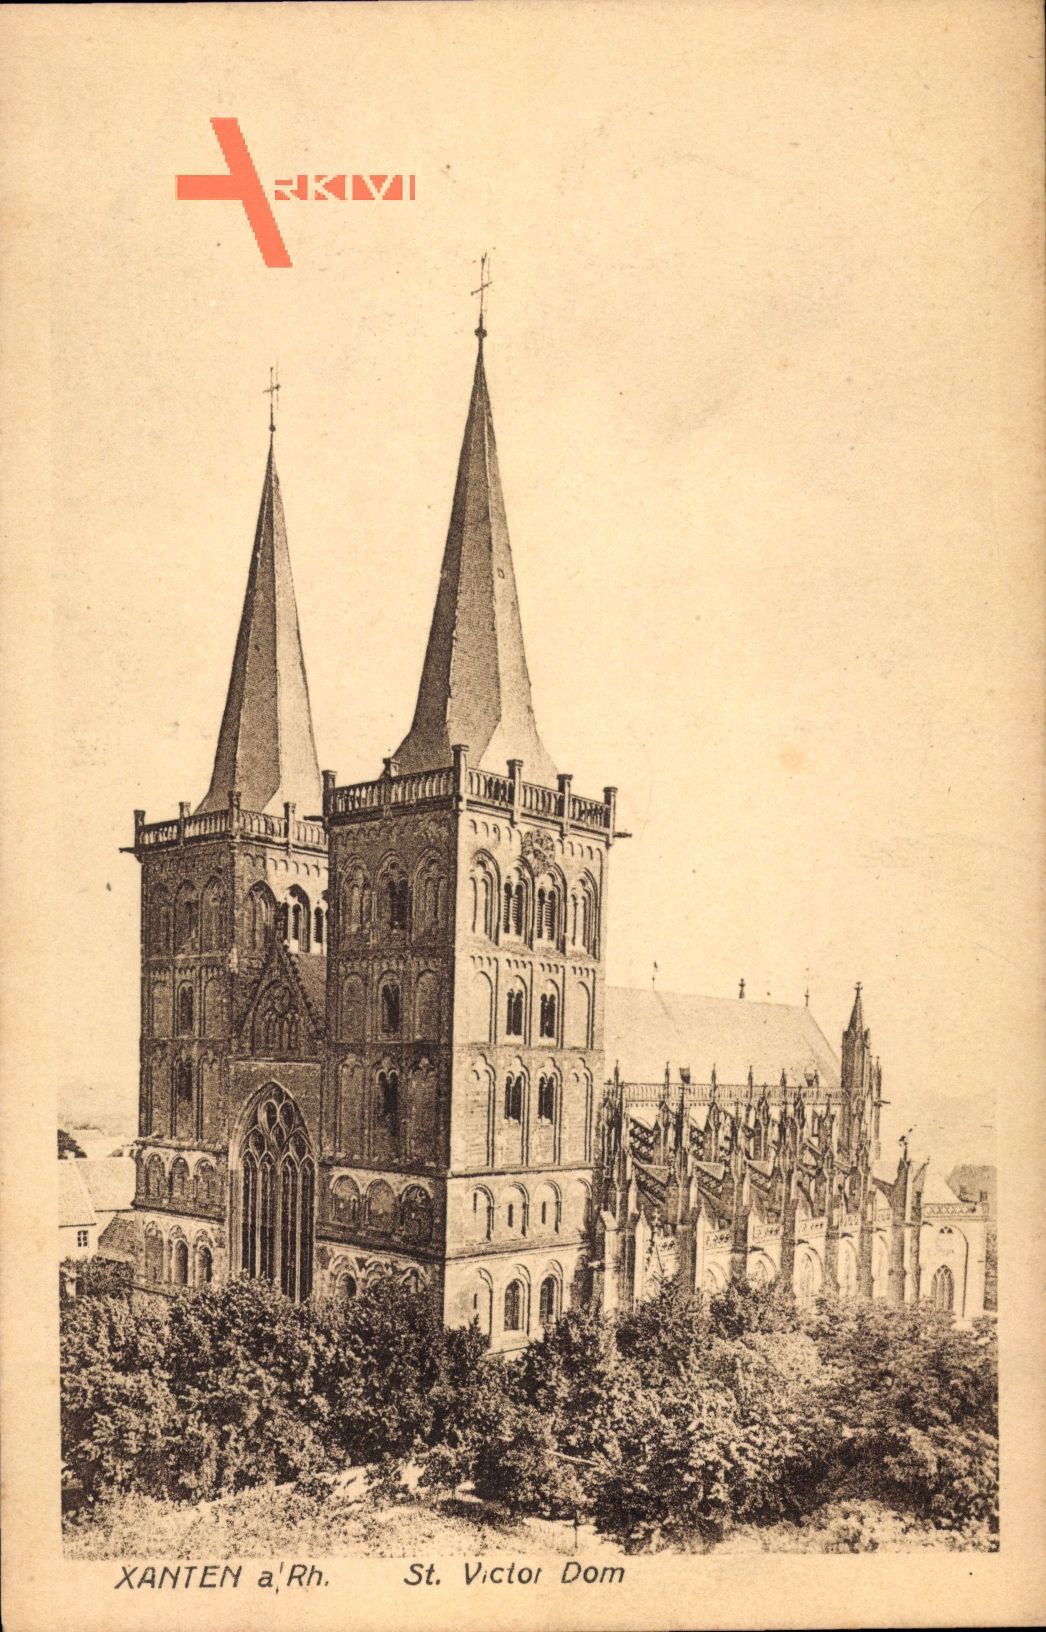 Xanten Rhein, Blick auf den St Victor Dom, gotischer Baustil